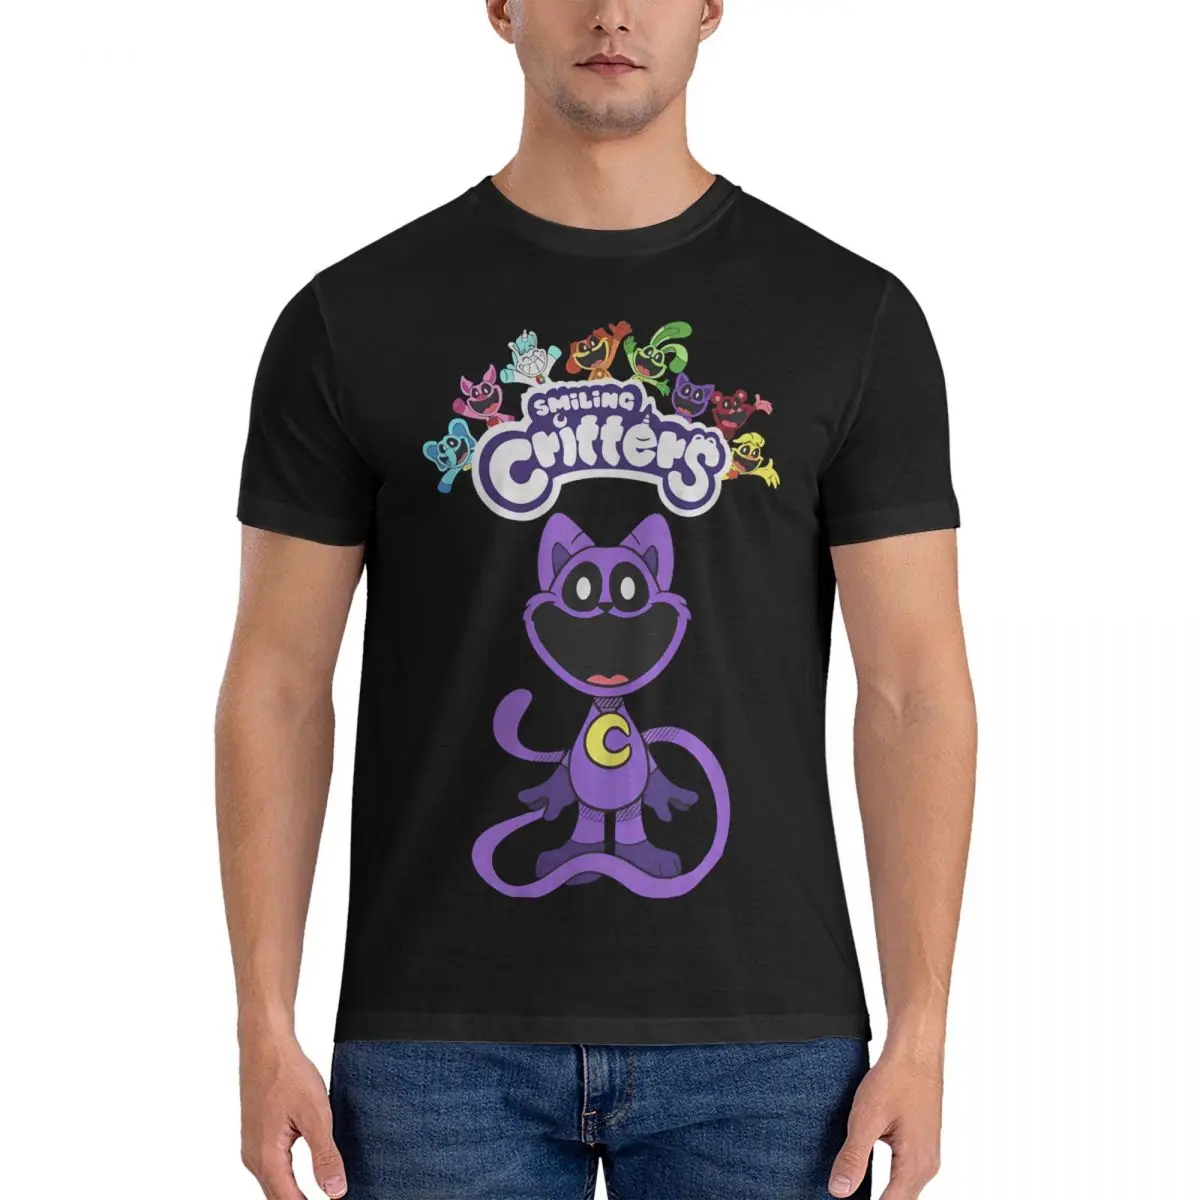 

Мужская футболка Catnap, забавная футболка с улыбающимся животным, футболка с коротким рукавом и круглым вырезом, одежда для взрослых из чистого хлопка